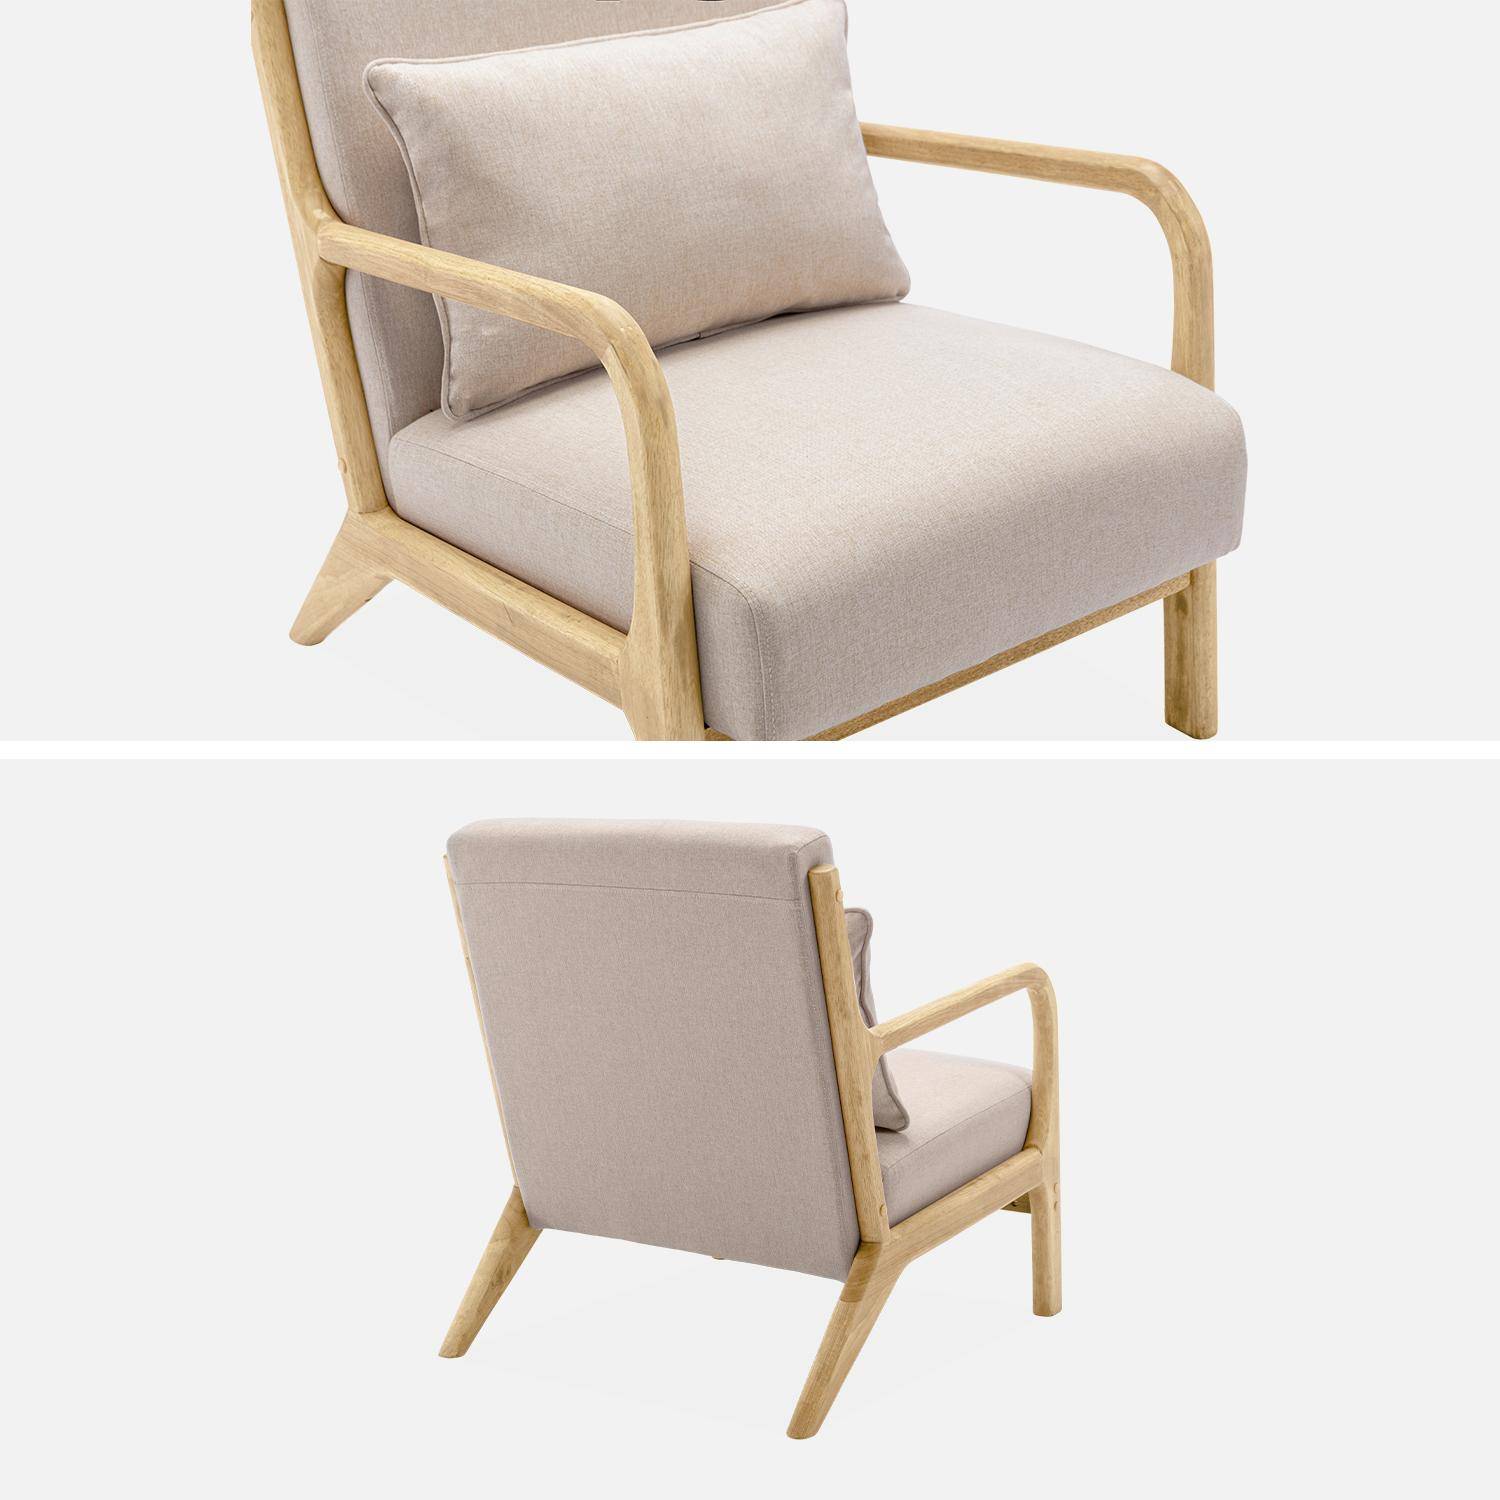 Poltrona de design em madeira e tecido, 1 assento reto fixo, pernas em bússola escandinavas, estrutura em madeira maciça, assento bege confortável Photo6